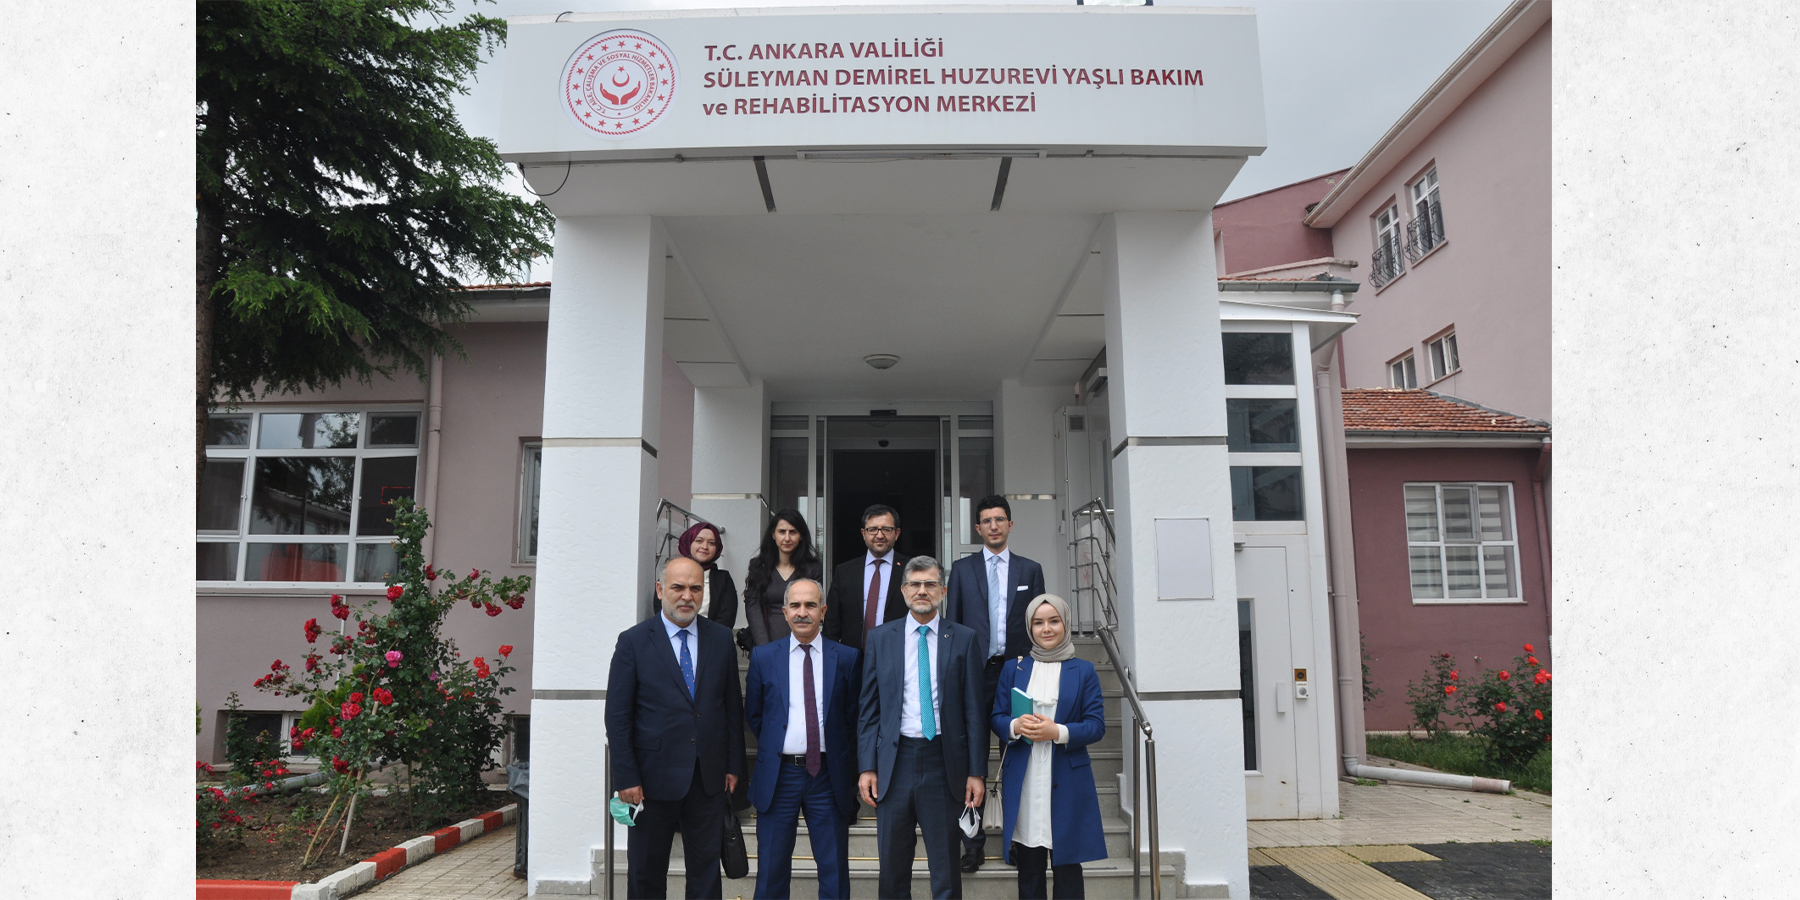 Süleyman Demirel Huzurevi Yaşlı Bakım ve Rehabilitasyon Merkezi Müdürlüğü Ziyaret Edildi